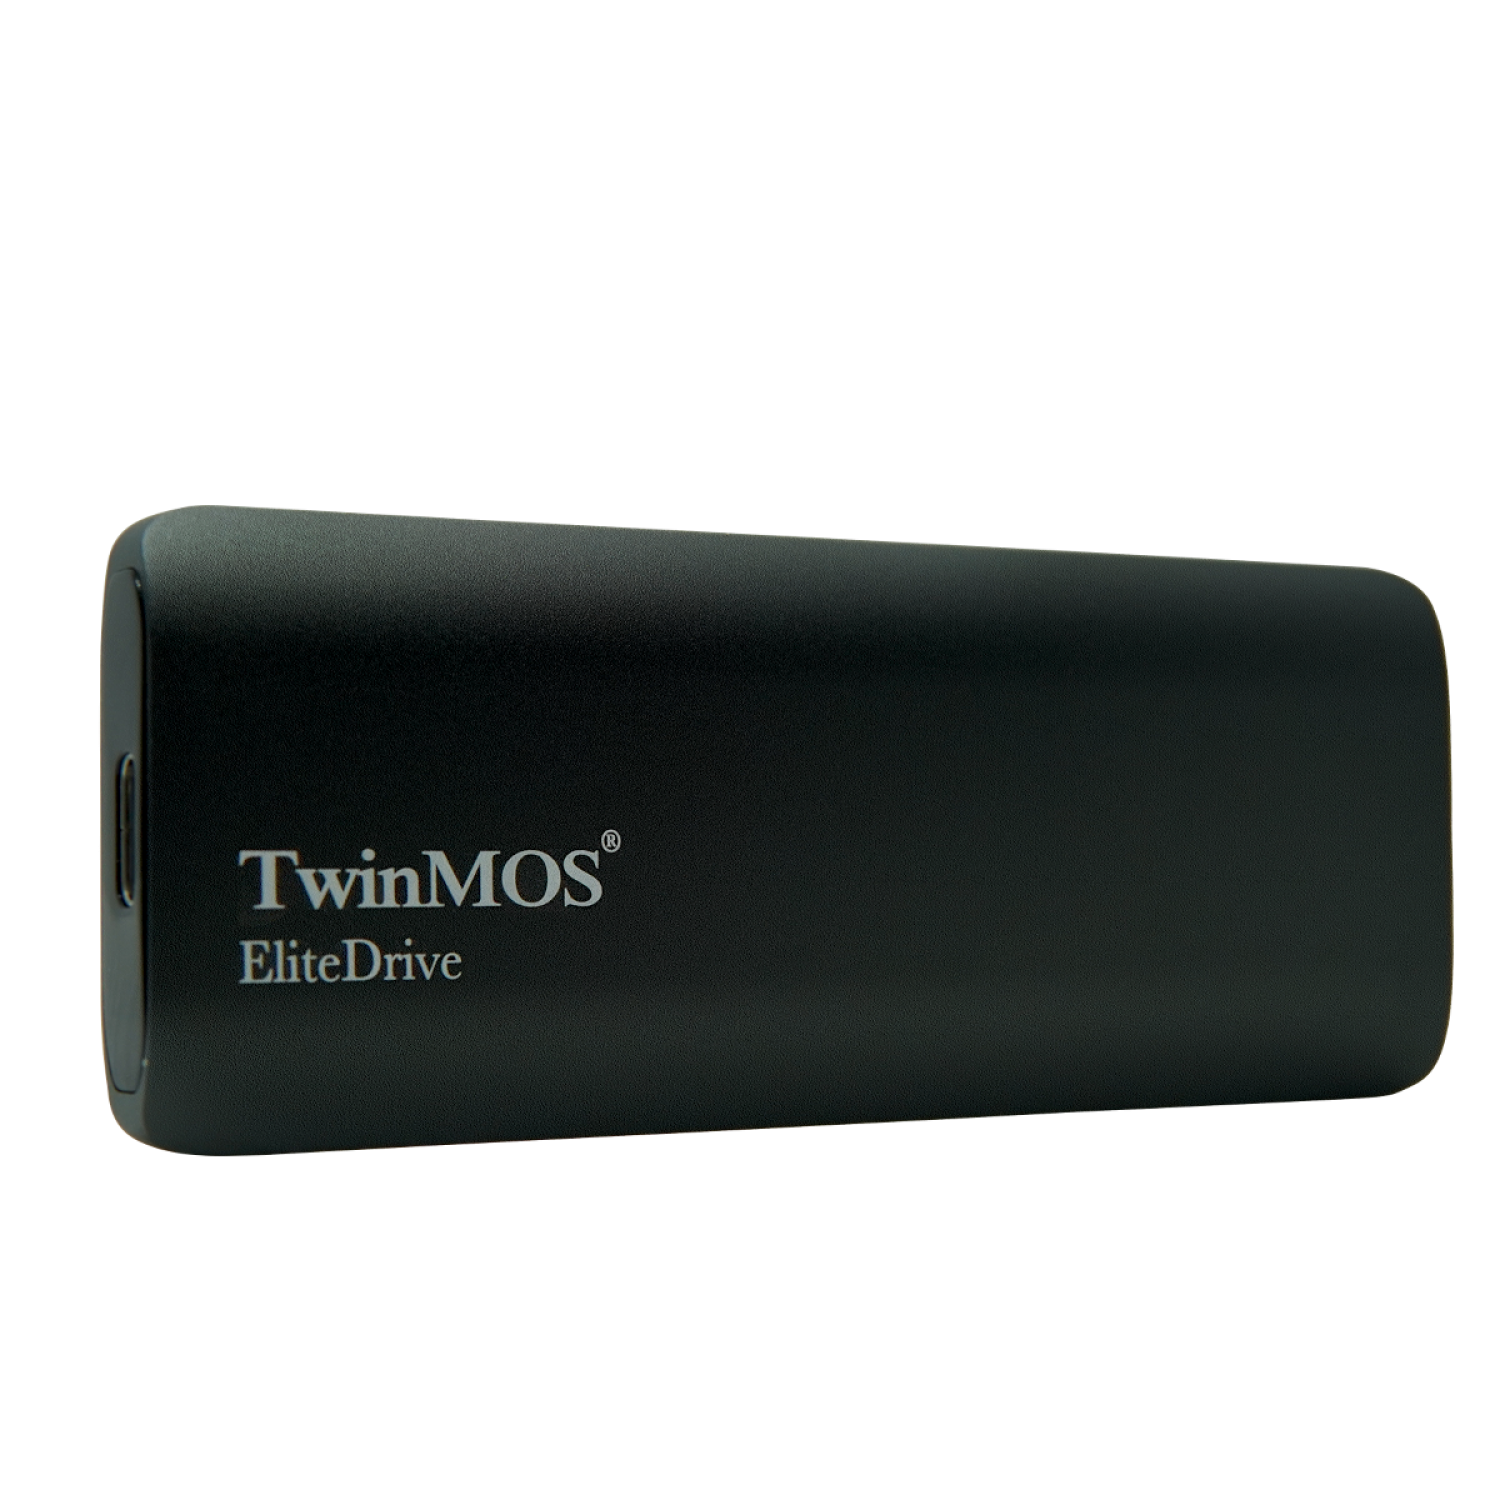 حافظه اس اس دی اکسترنال TwinMOS EliteDrive 1TB - Dark Grey-1